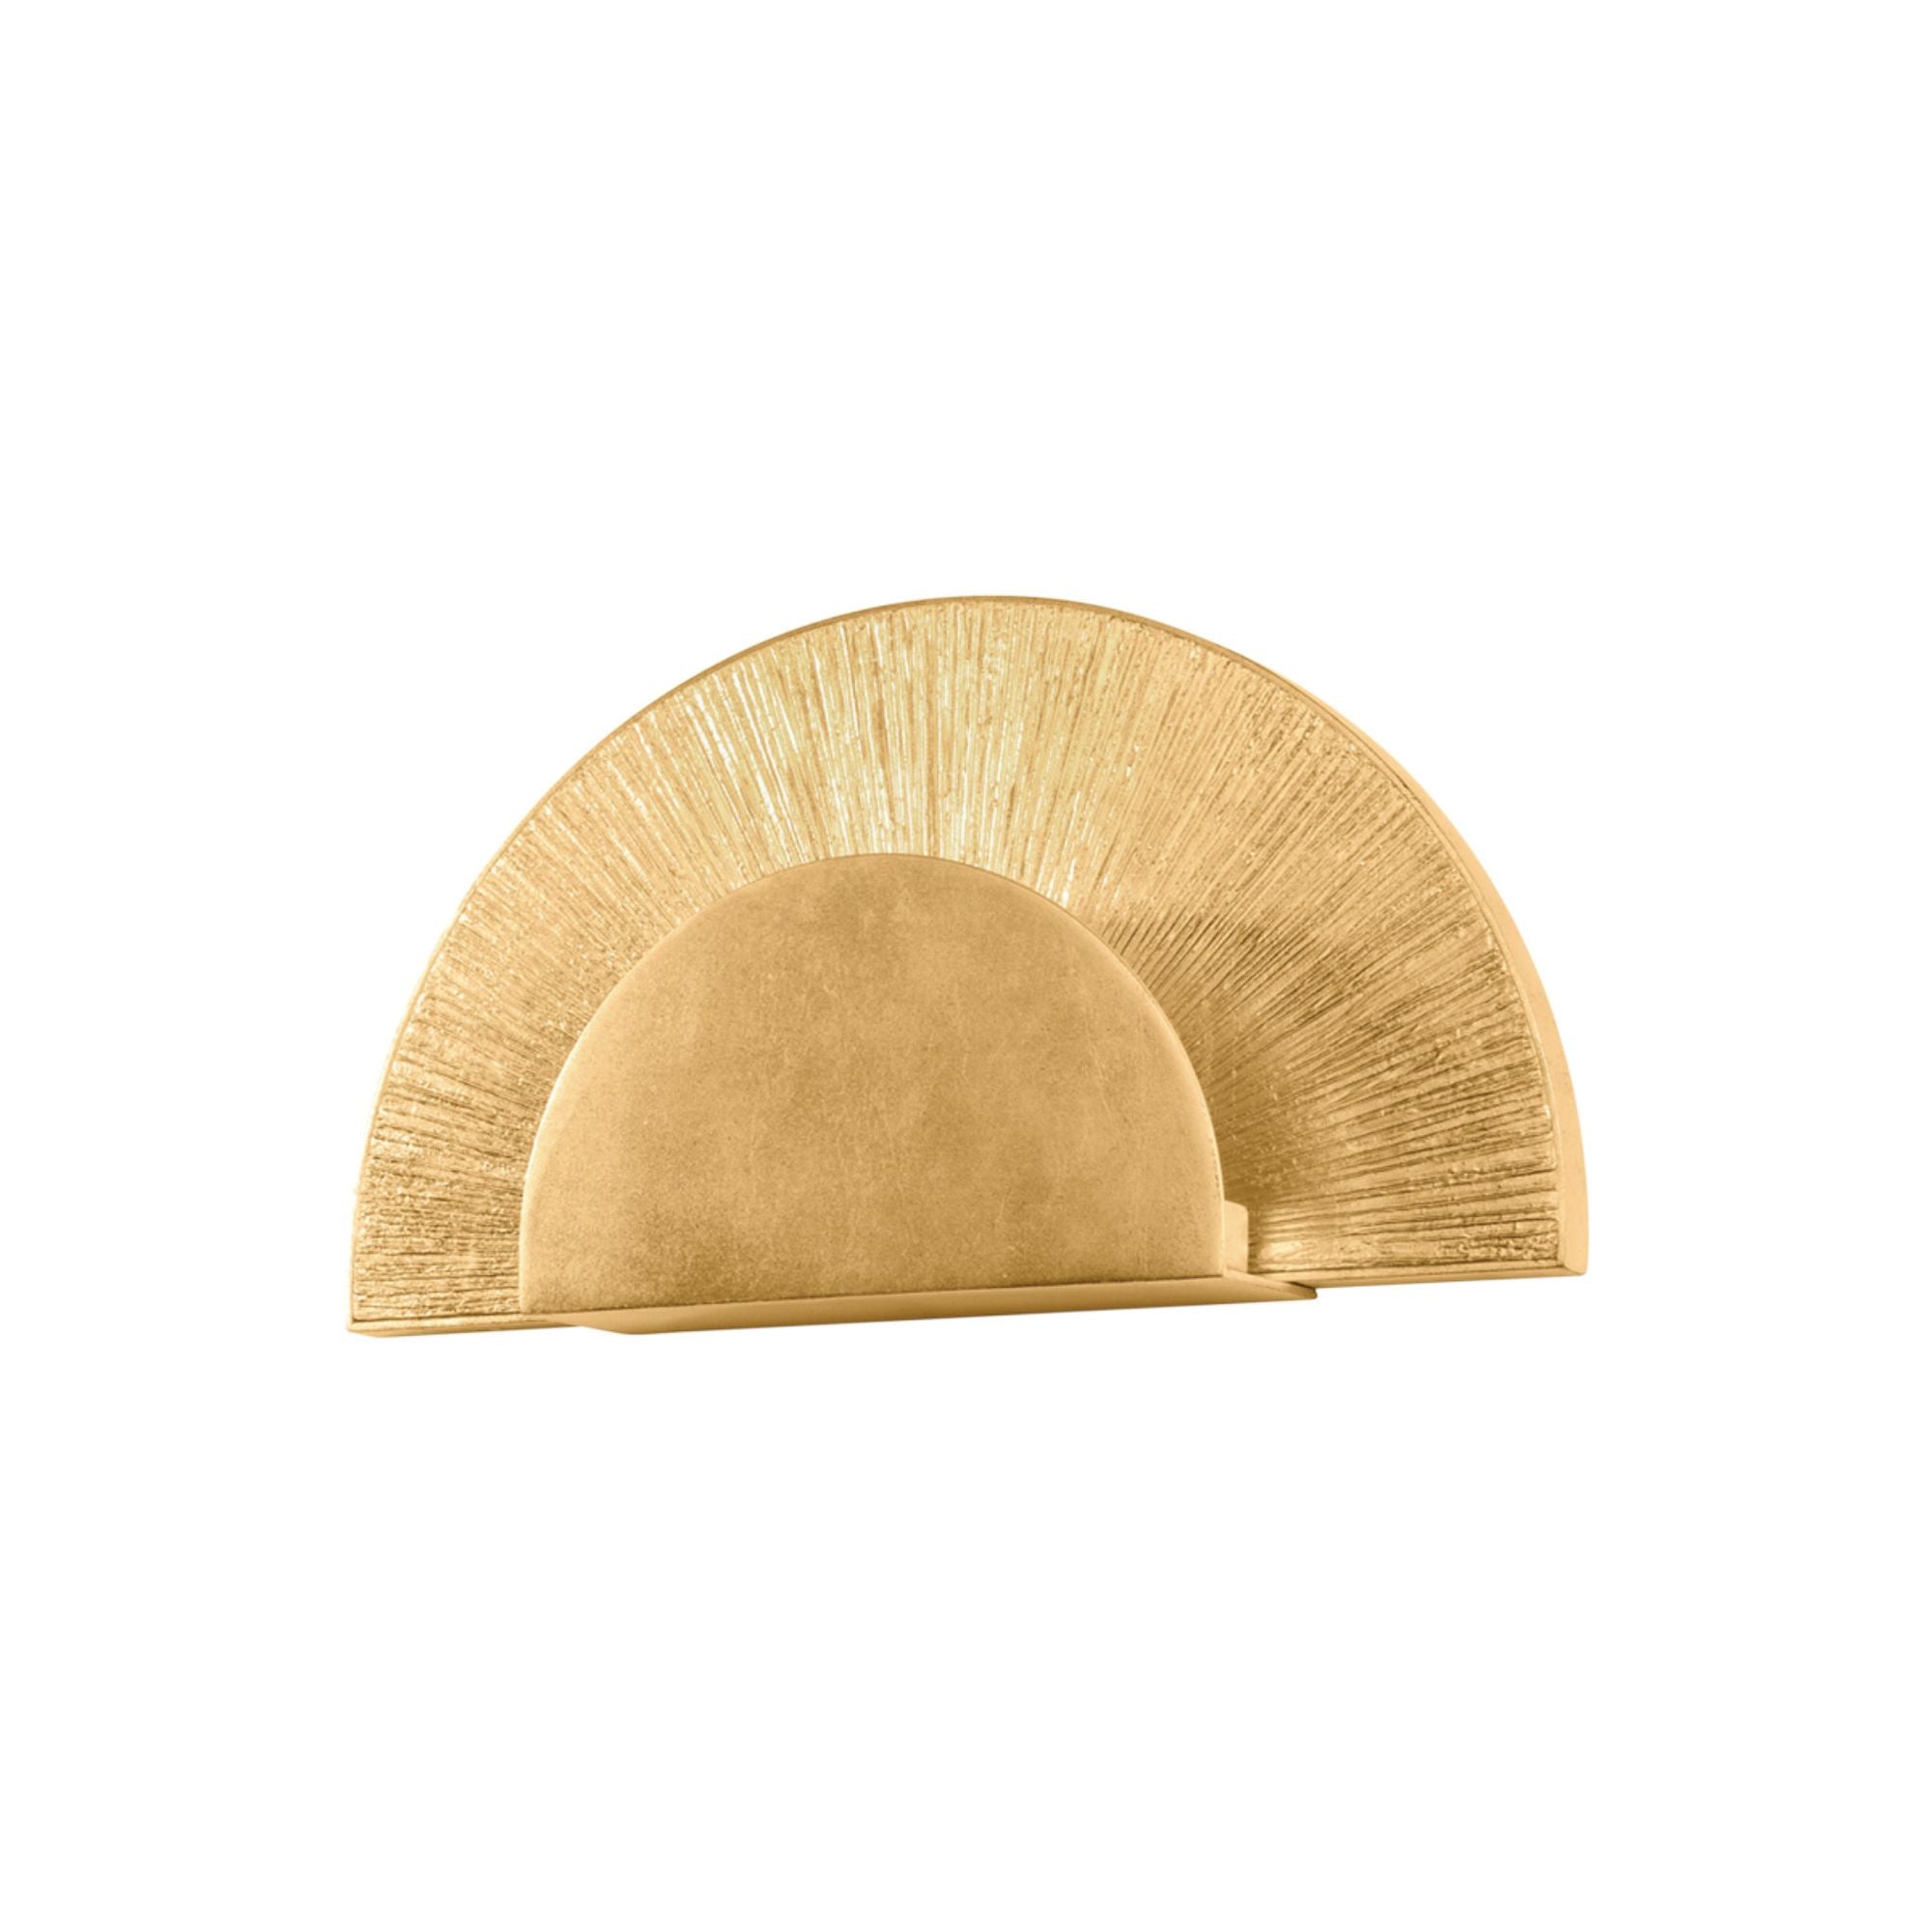 Homecrest 1 Light Wall Sconce in Vintage Gold Leaf